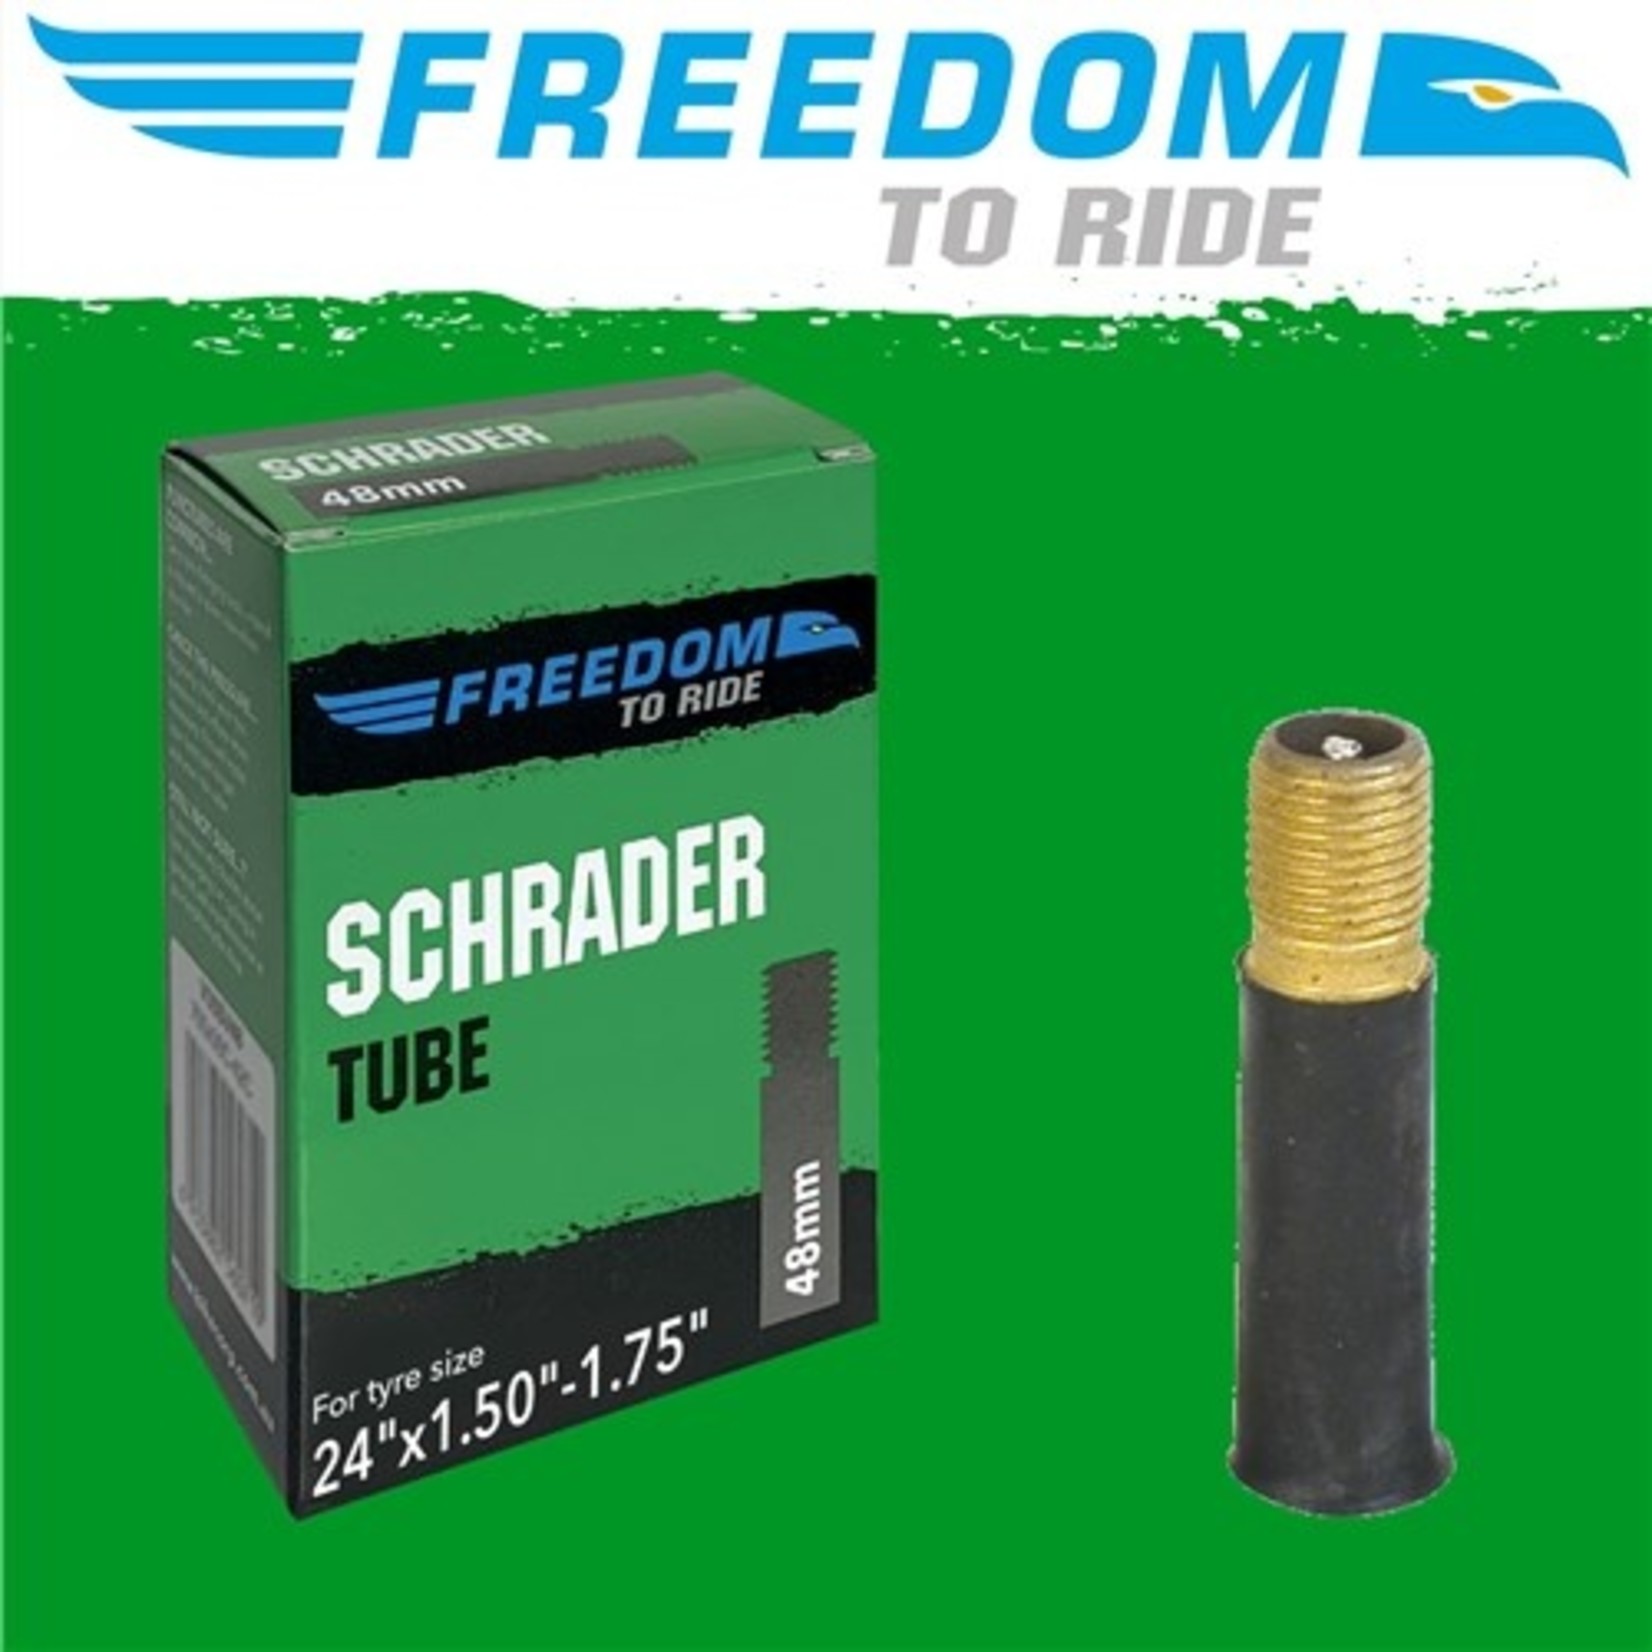 Freedom Freedom Bike Tube - 24" X 1.50-1.75" - Schrader Valve 48mm